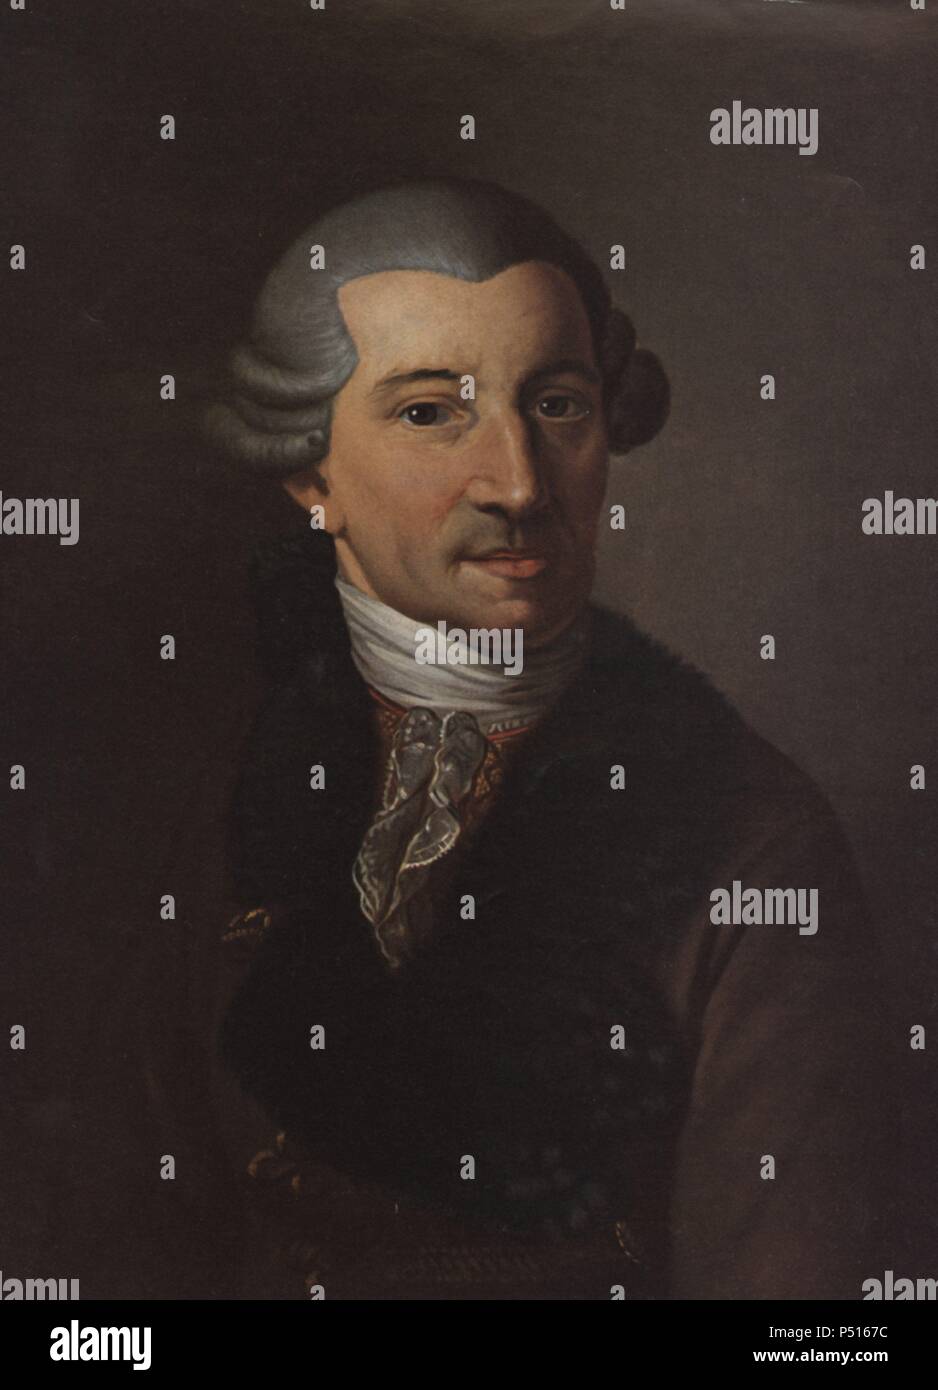 Franz Joseph Haydn (Rohrau, 1732-Viena, 1809). Compositor y director de orquesta autríaco. Fue maestro de Beethoven. Foto Stock